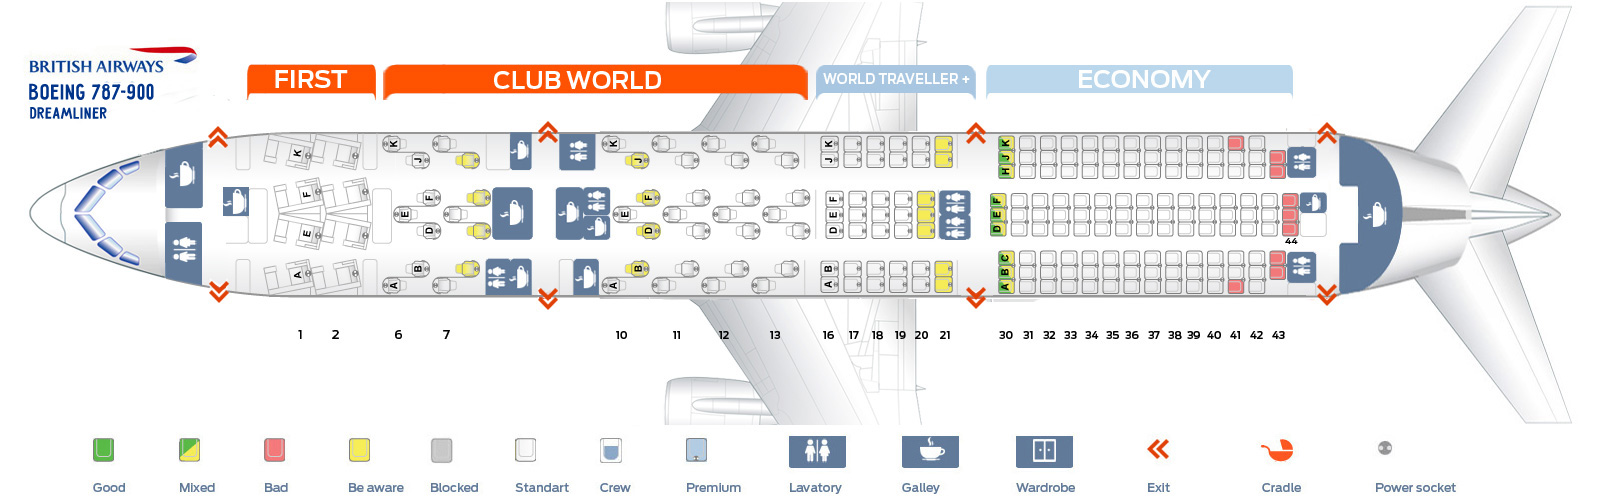 Seat Map Boeing 787 9 British Airways Best Seats In Plane